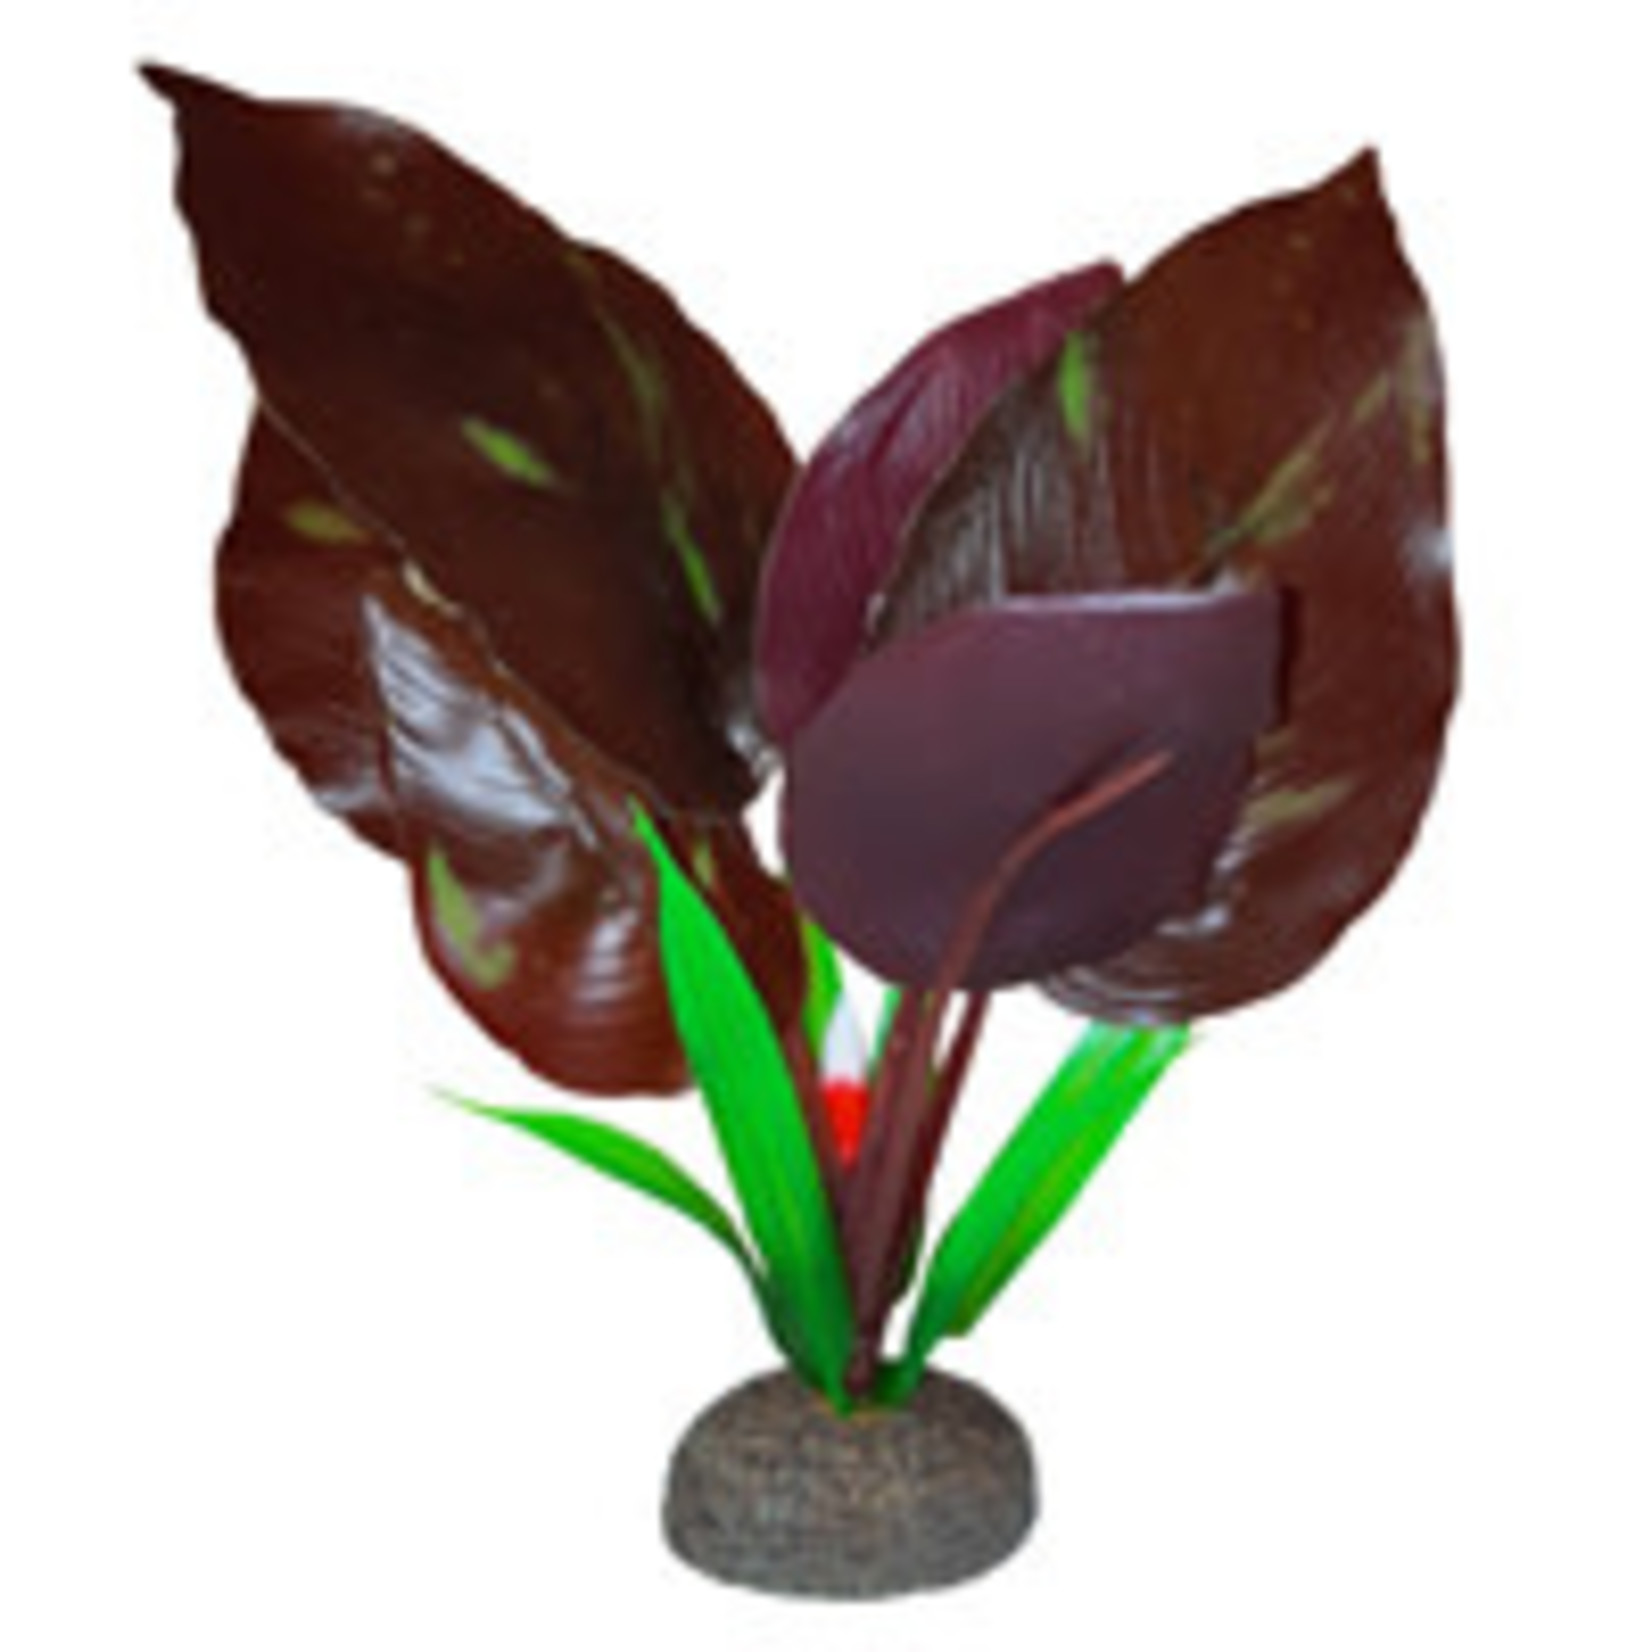 Fluval Betta Premium Red Lizard Plant, 6 in / 15 cm